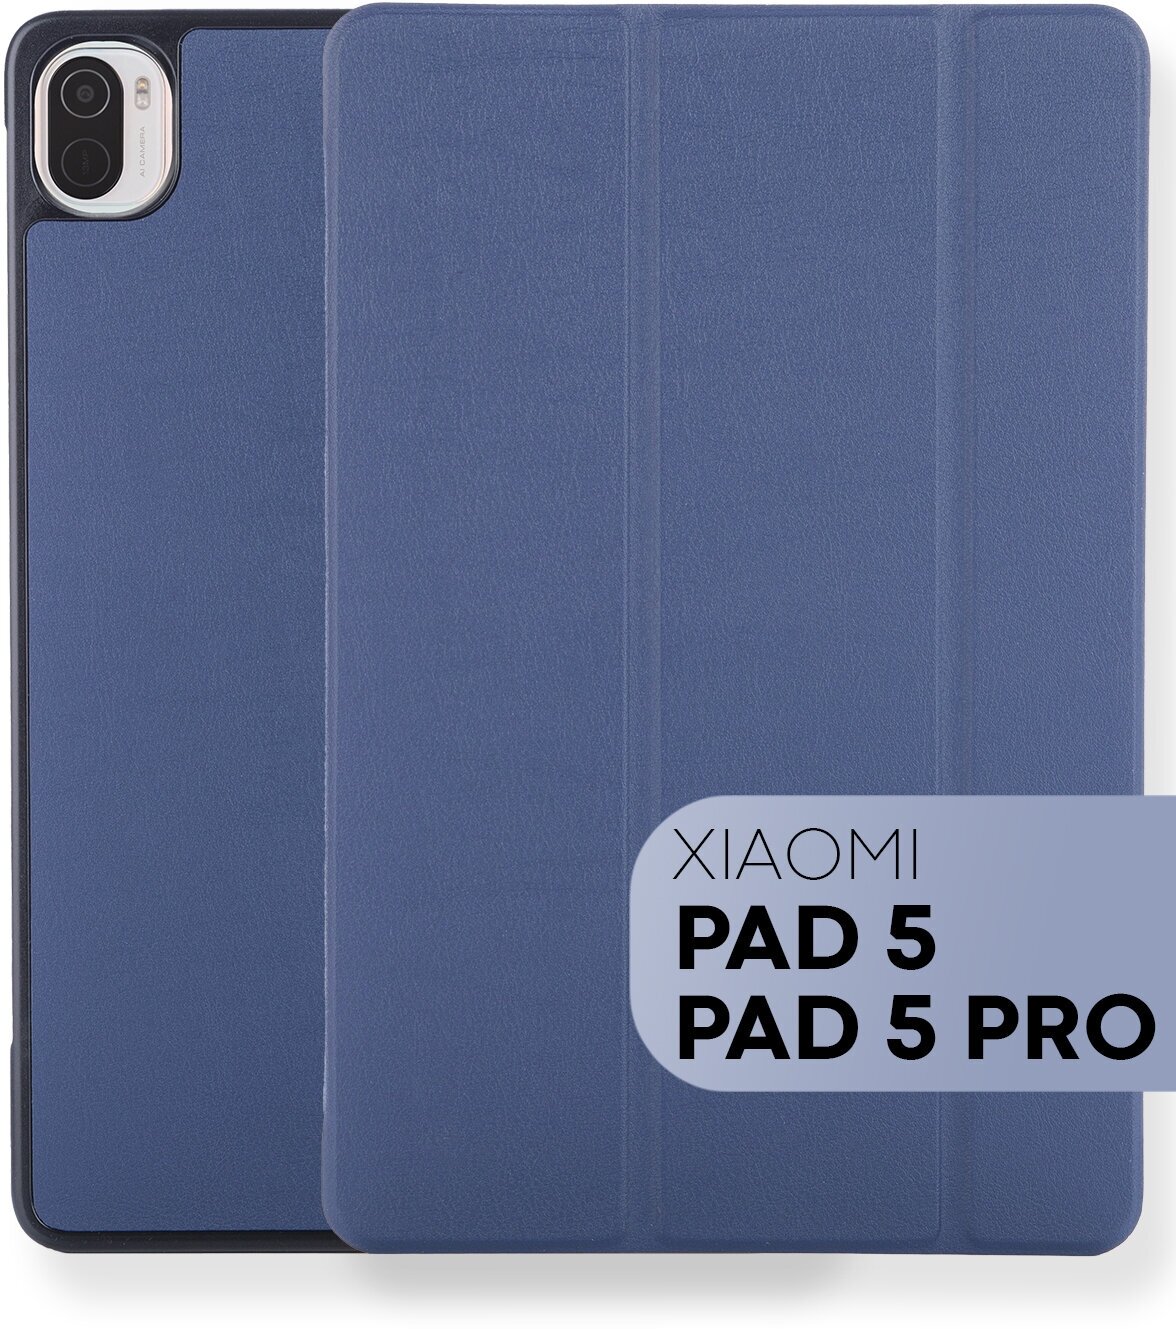 Чехол-книжка для планшета Xiaomi Pad 5 и Xiaomi Pad 5 Pro с функцией подставки и магнитной блокировкой экрана (Сяоми Пад 5 с диагональю 11 дюймов, Ксиаоми Пад 5 Про) с пластиковым основанием, фиксацией крышки и вырезом для стилуса, бренд картофан, синий